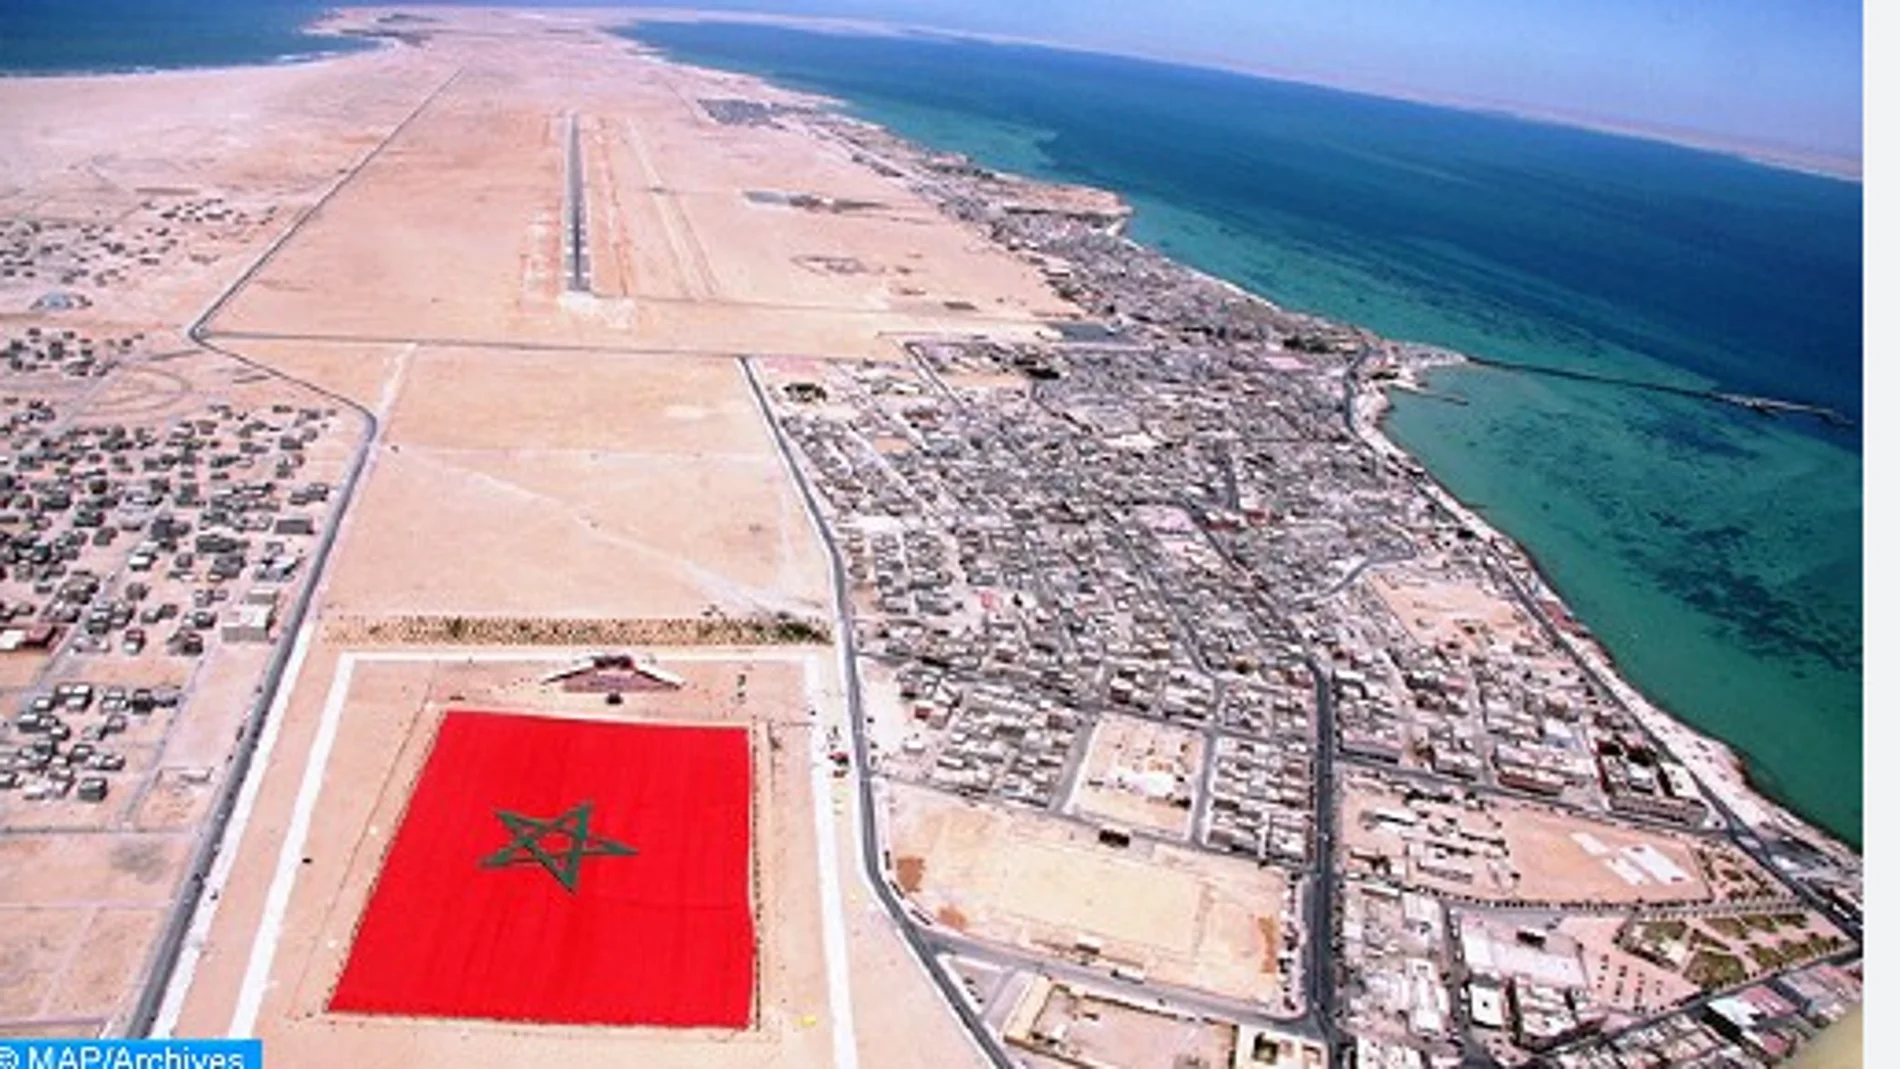 Dajla, donde Marruecos construye un super puerto